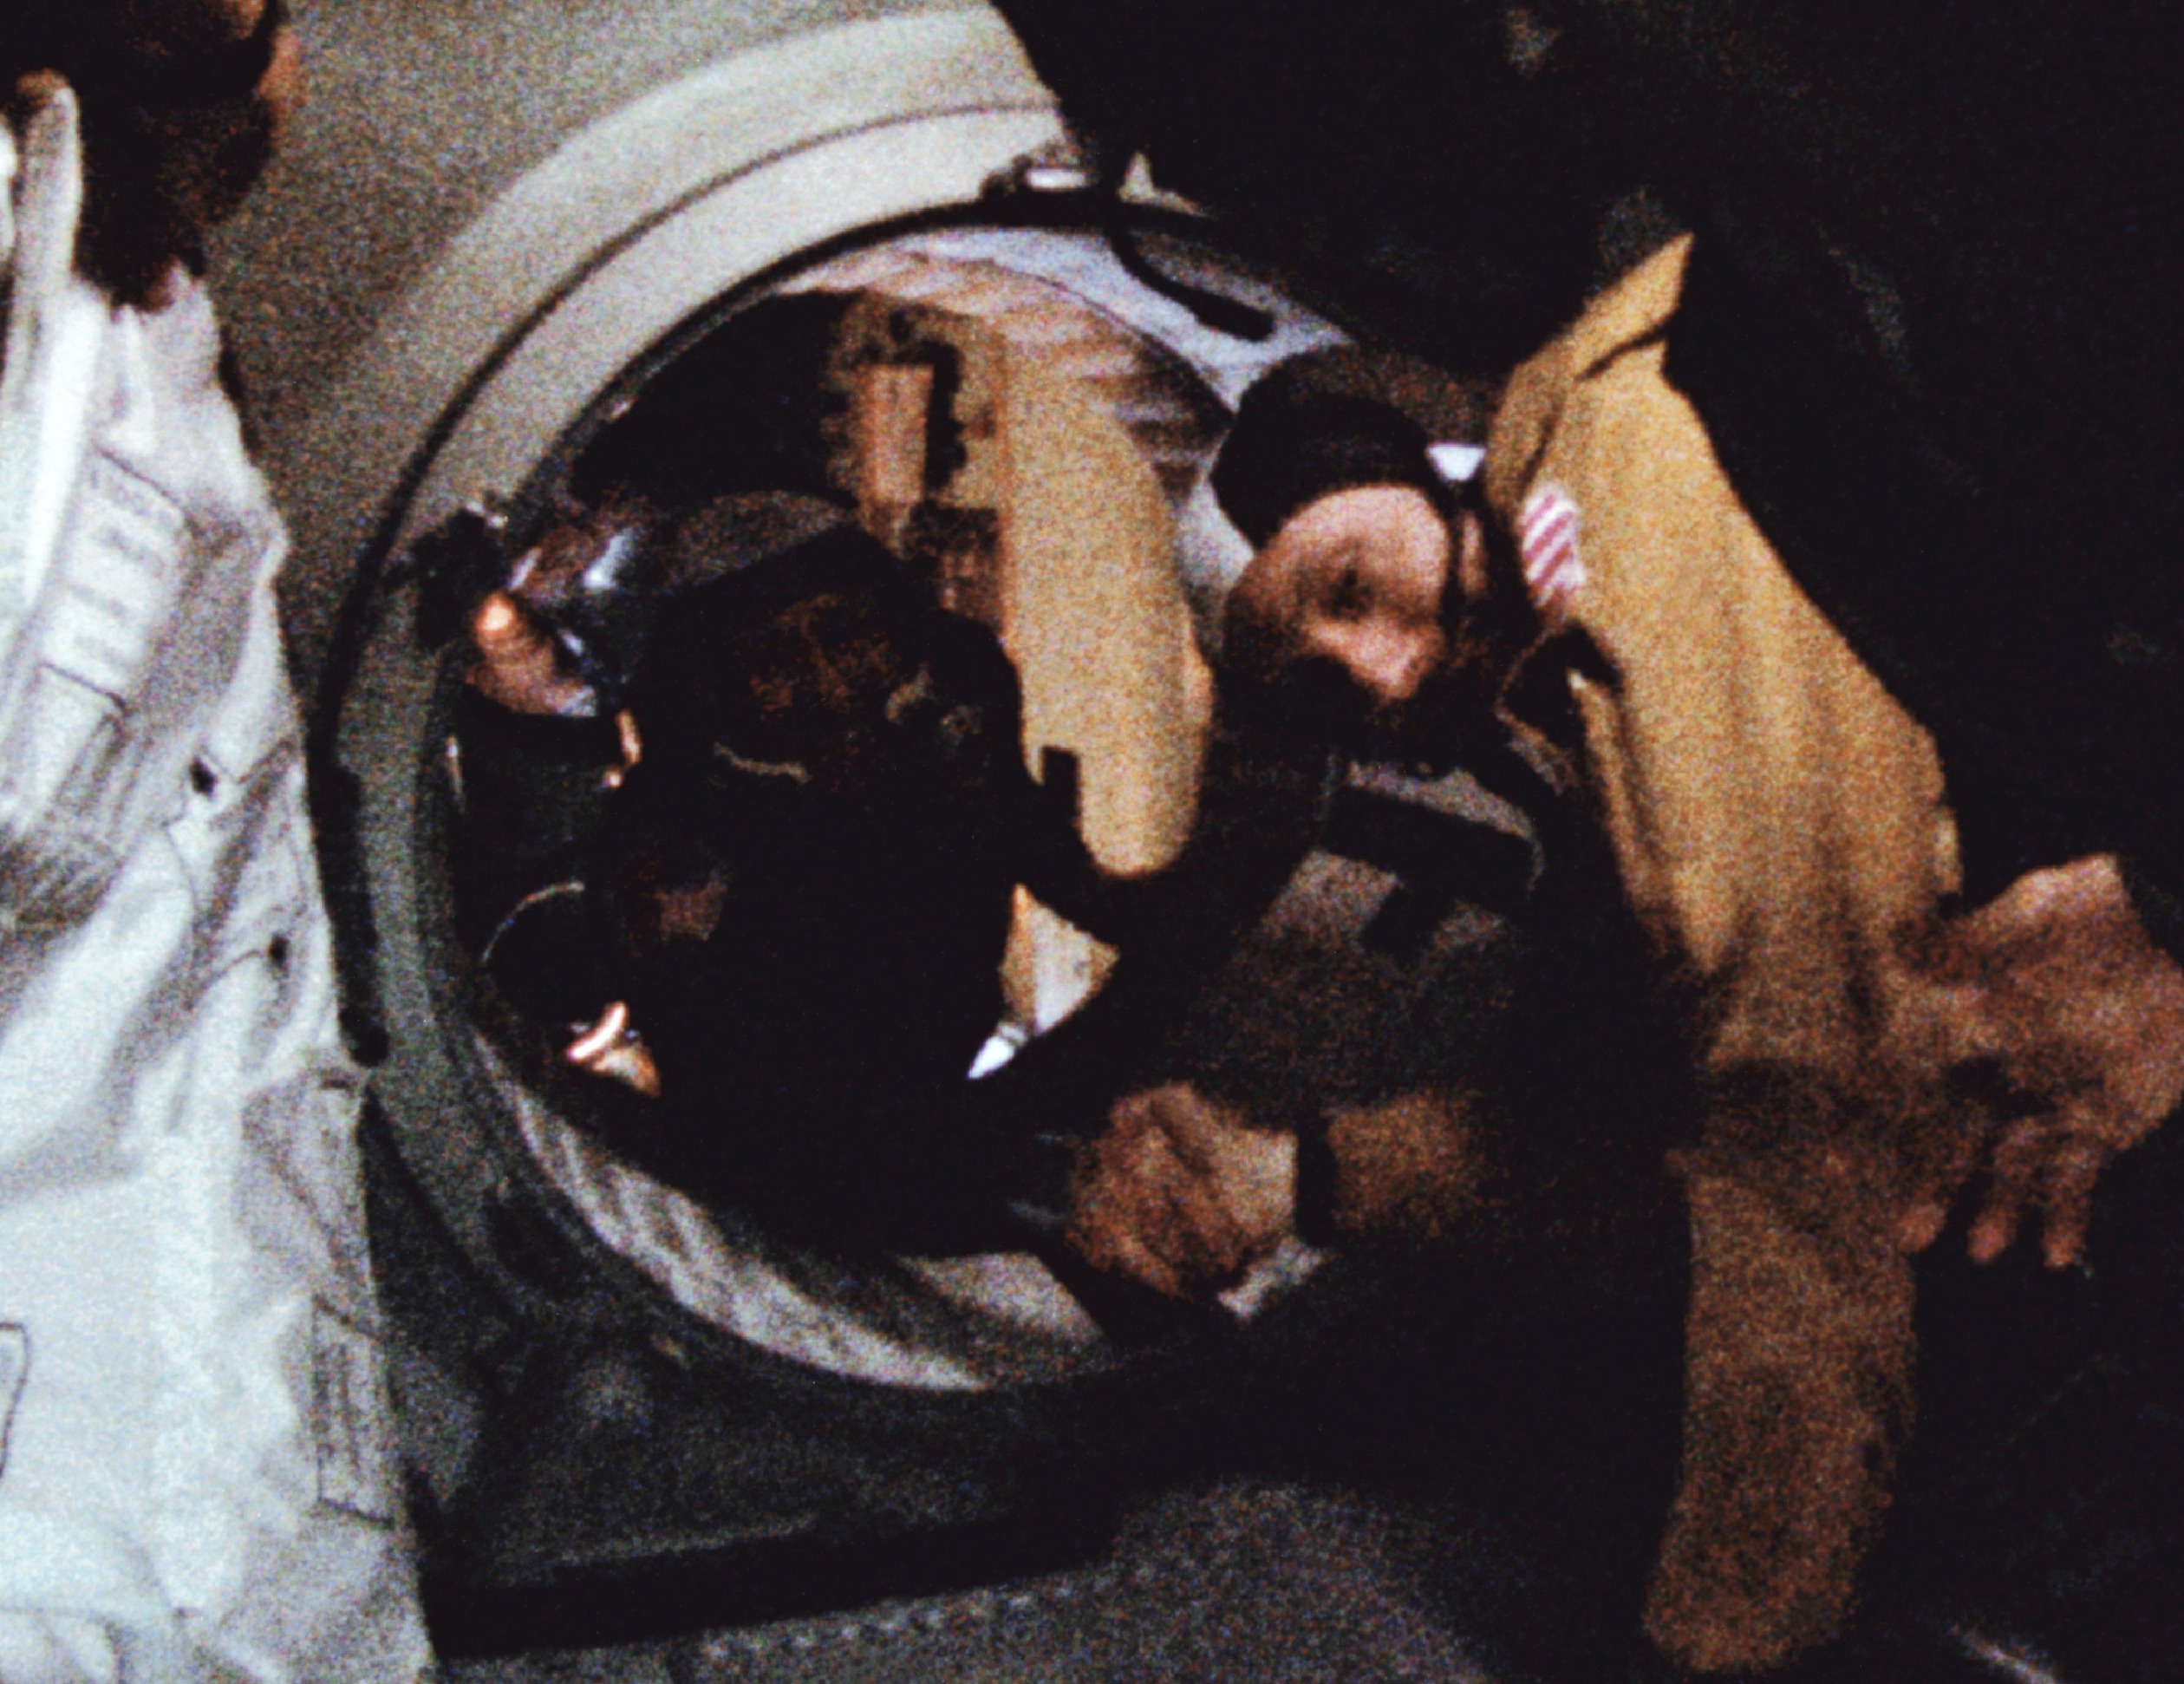 17 июля 1975 года. Союз Аполлон рукопожатие в космосе. Рукопожатие в космосе Союз Аполлон 1975.